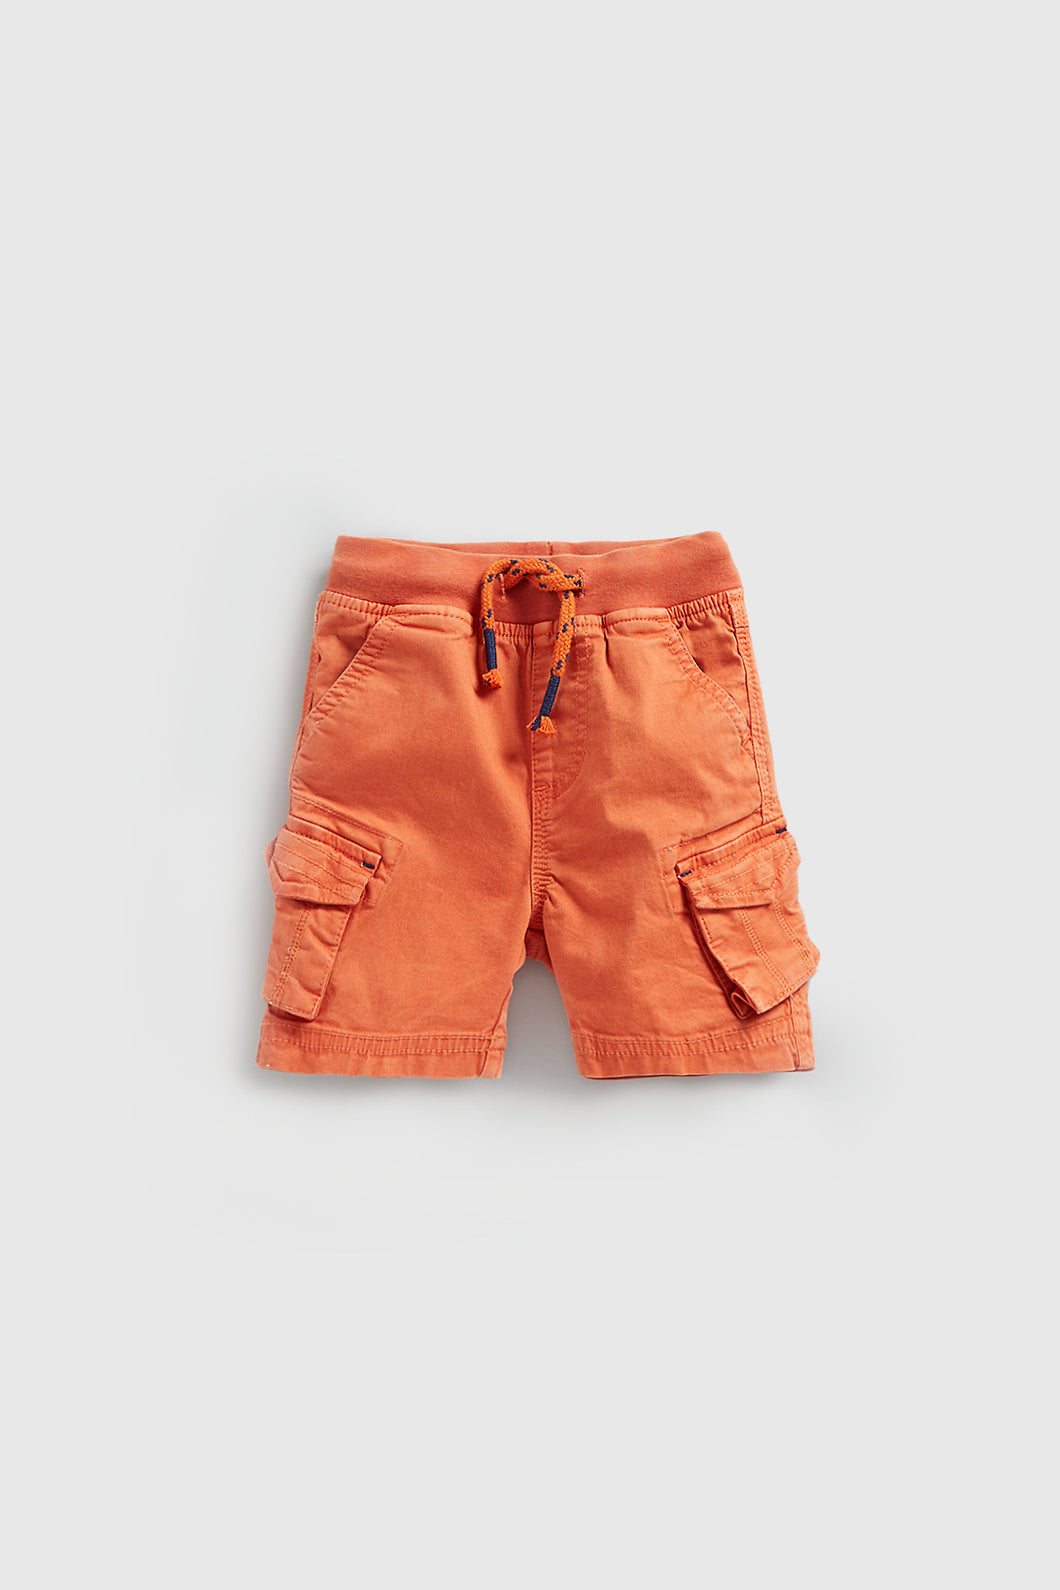 Mothercare Orange Cargo Shorts